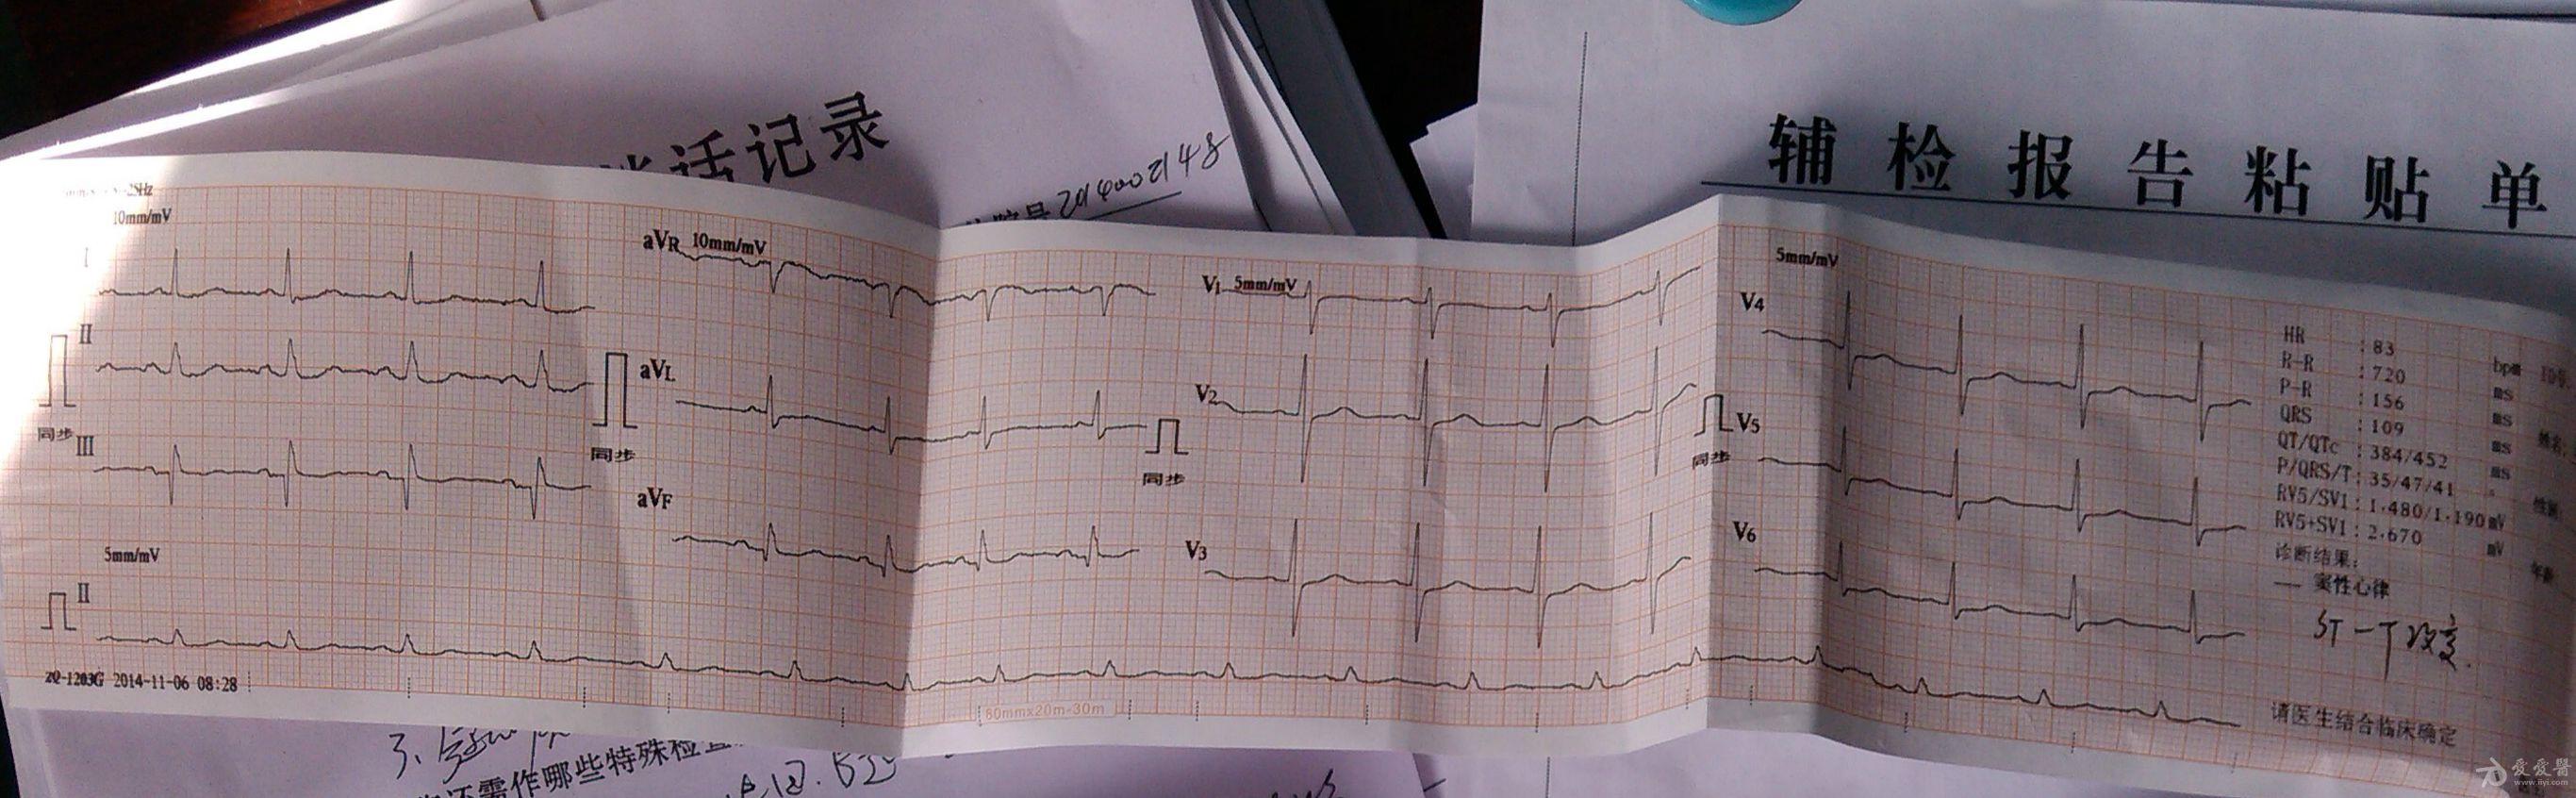 患者心跳骤停前3分钟心电图,求分析!